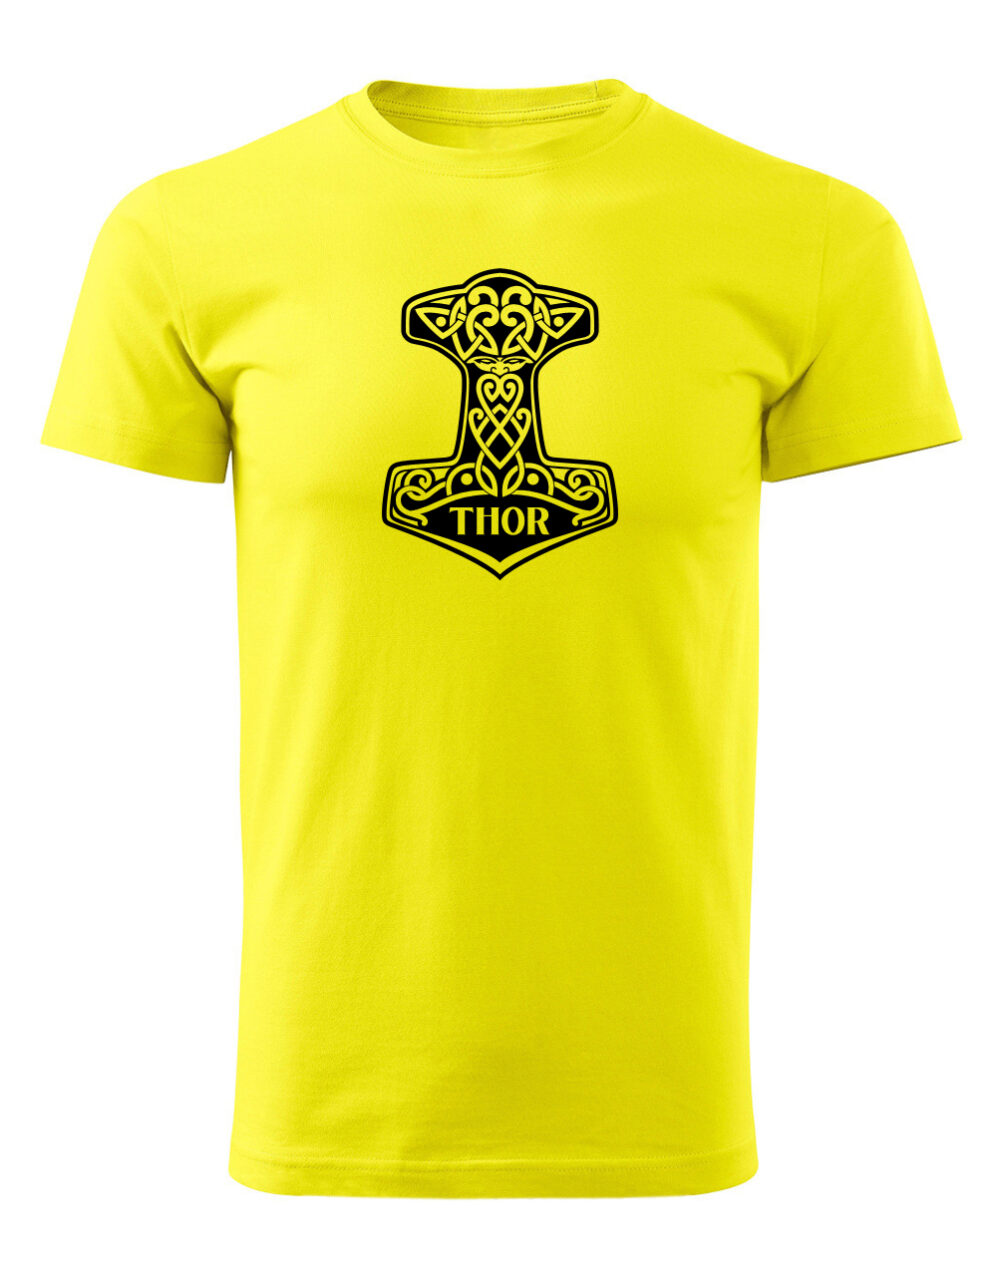 Pánské tričko s potiskem Thorovo kladivo žlutá